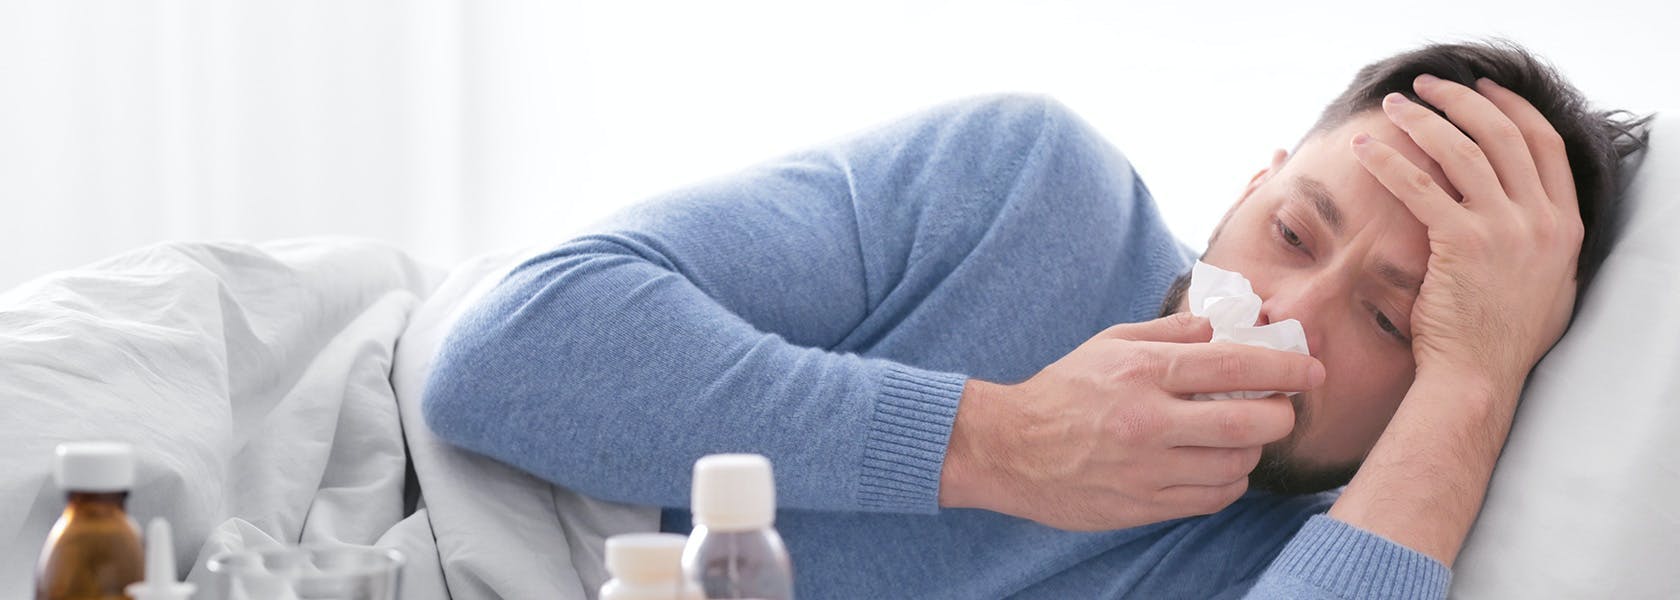 Hombre acostado en su cama con síntomas de gripe limpiando su nariz.